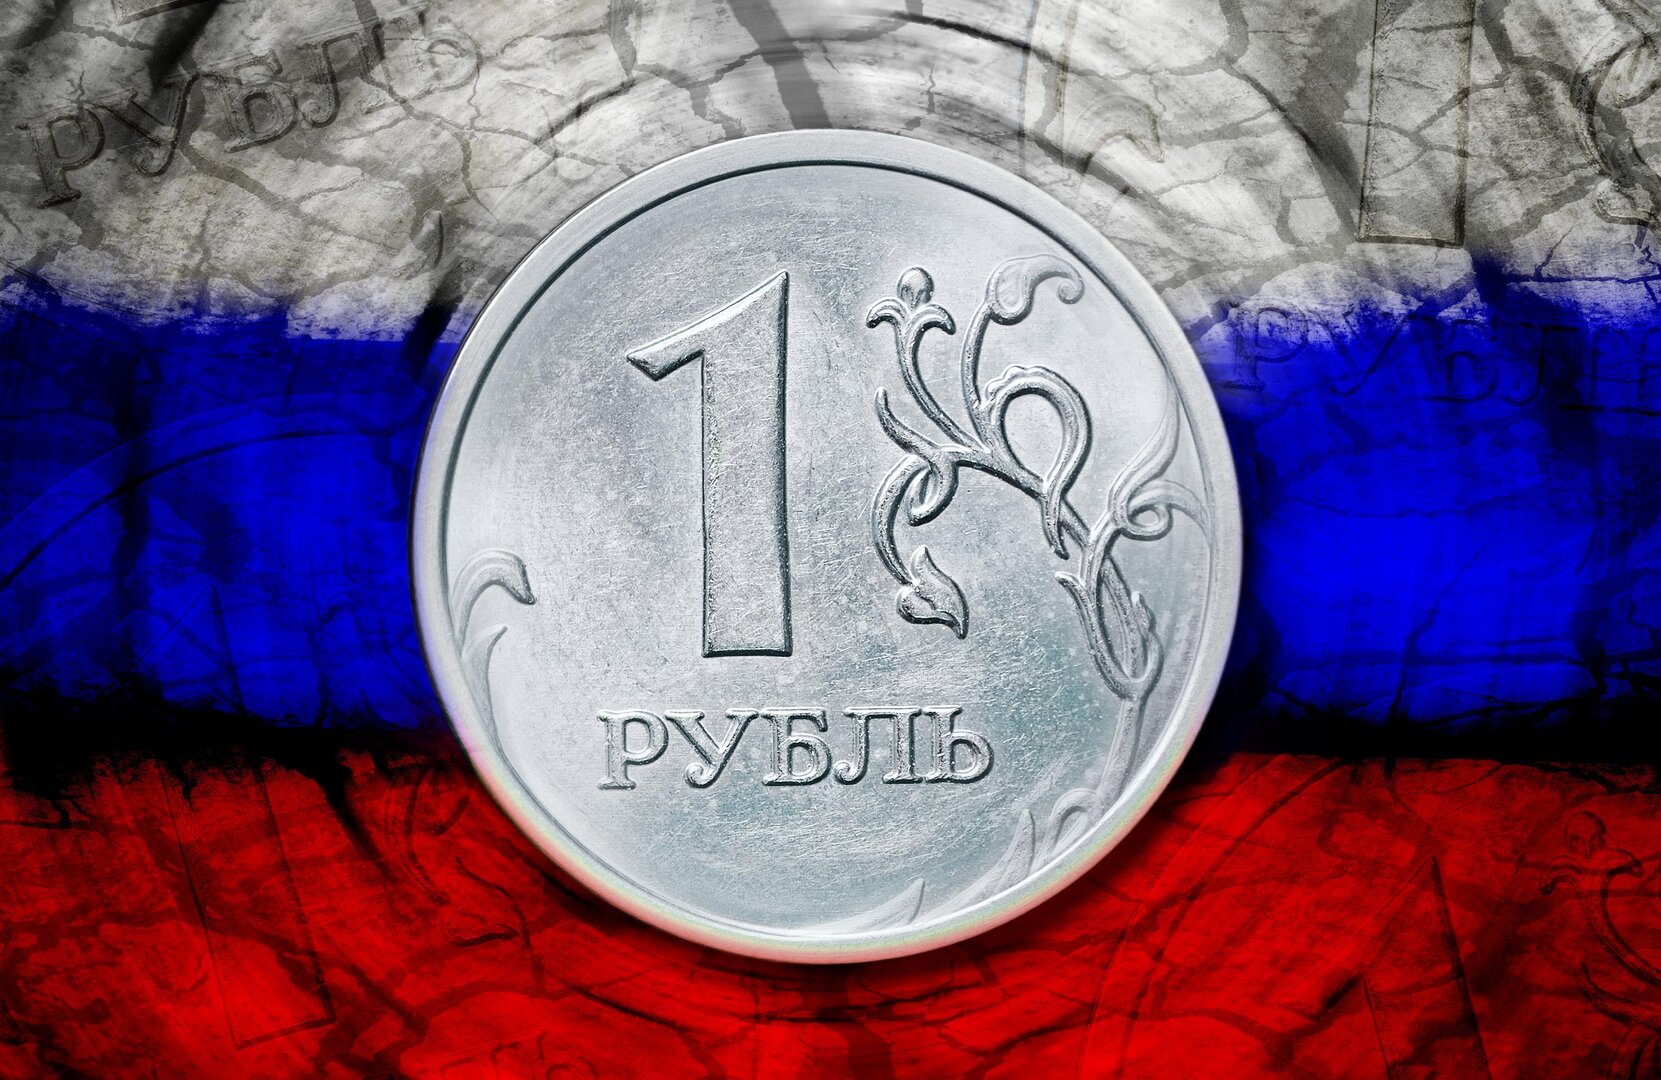 ثقل الصادرات الروسية في الميزان العالمي.. 41 سلعة تعد روسيا مصدرا رئيسيا لها (بيانات)